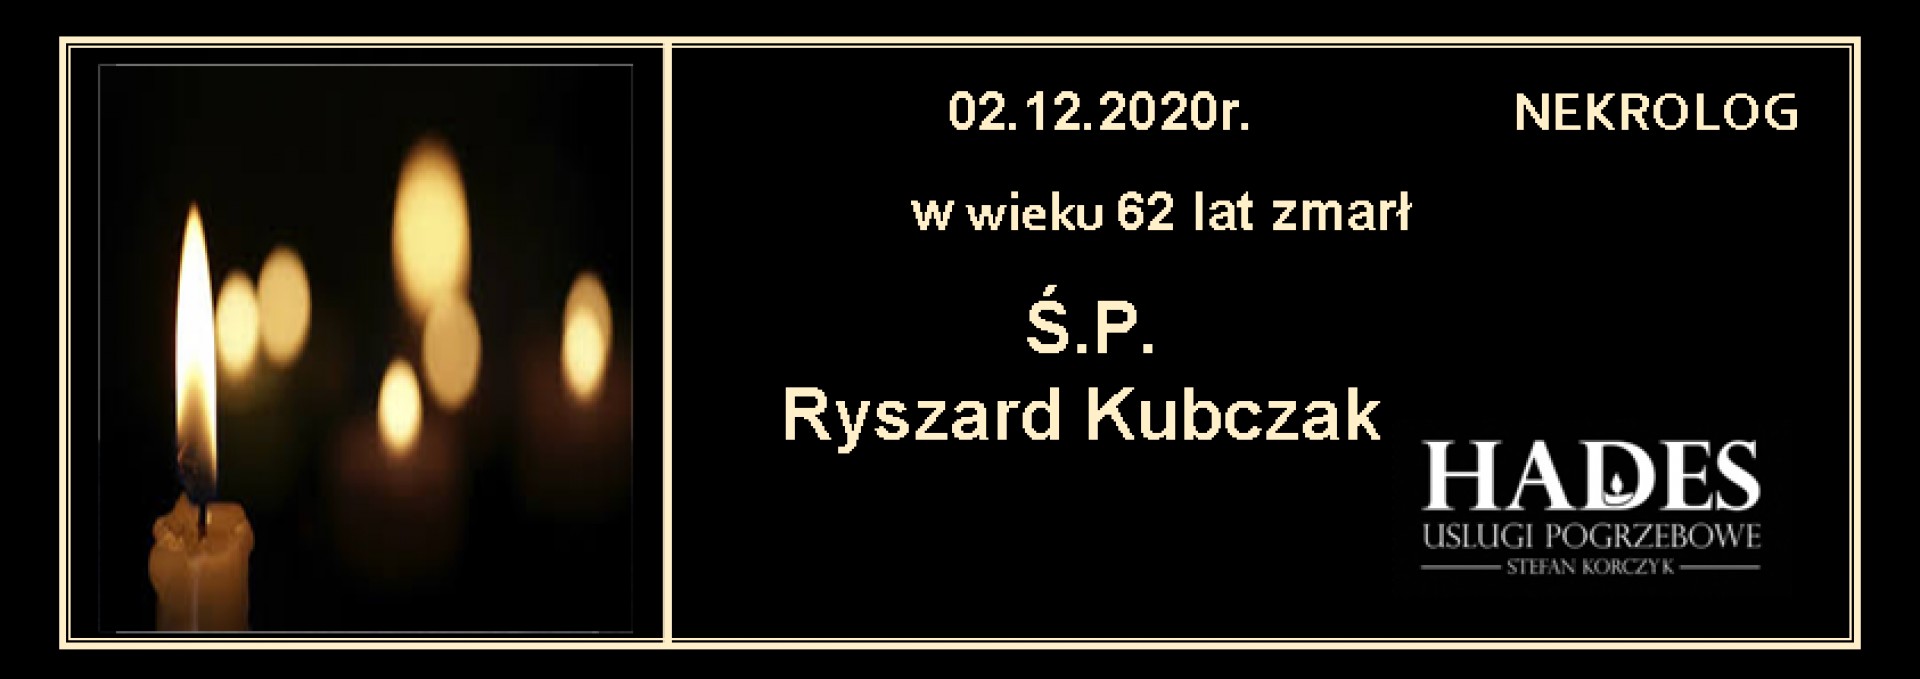 Ś.P. Ryszard Kubczak